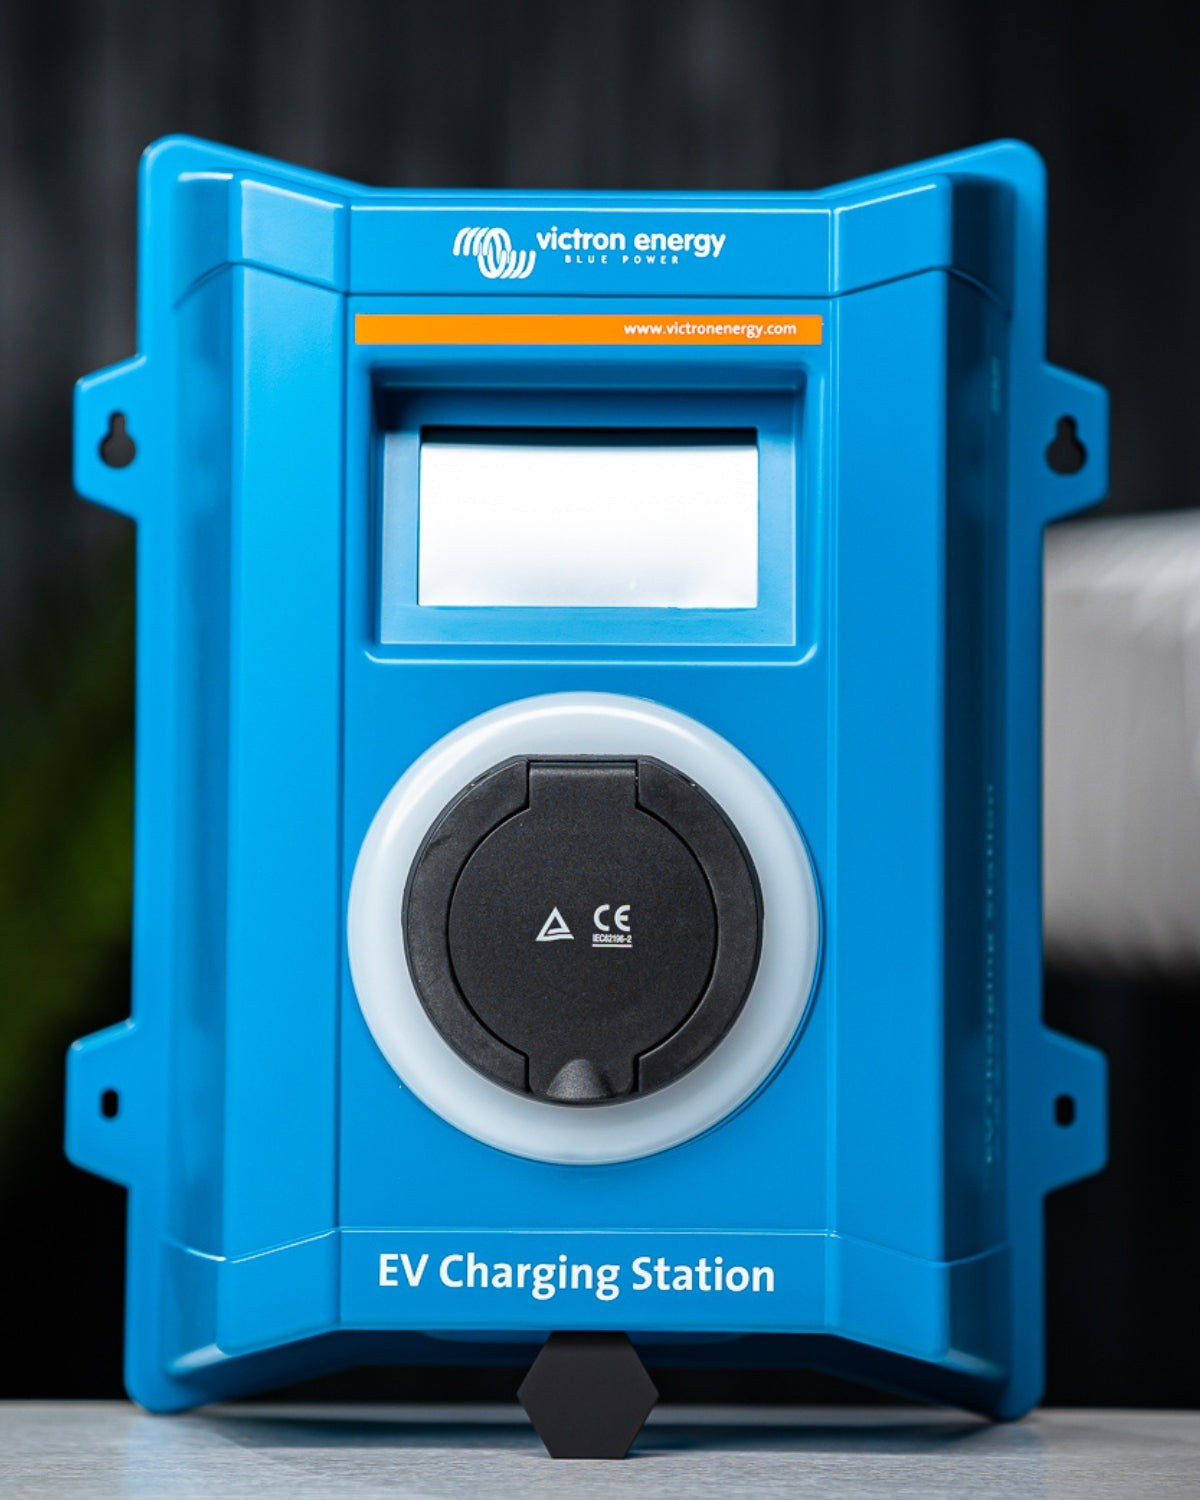 Stație Încărcare EV Charging Station Victron, 22 kW